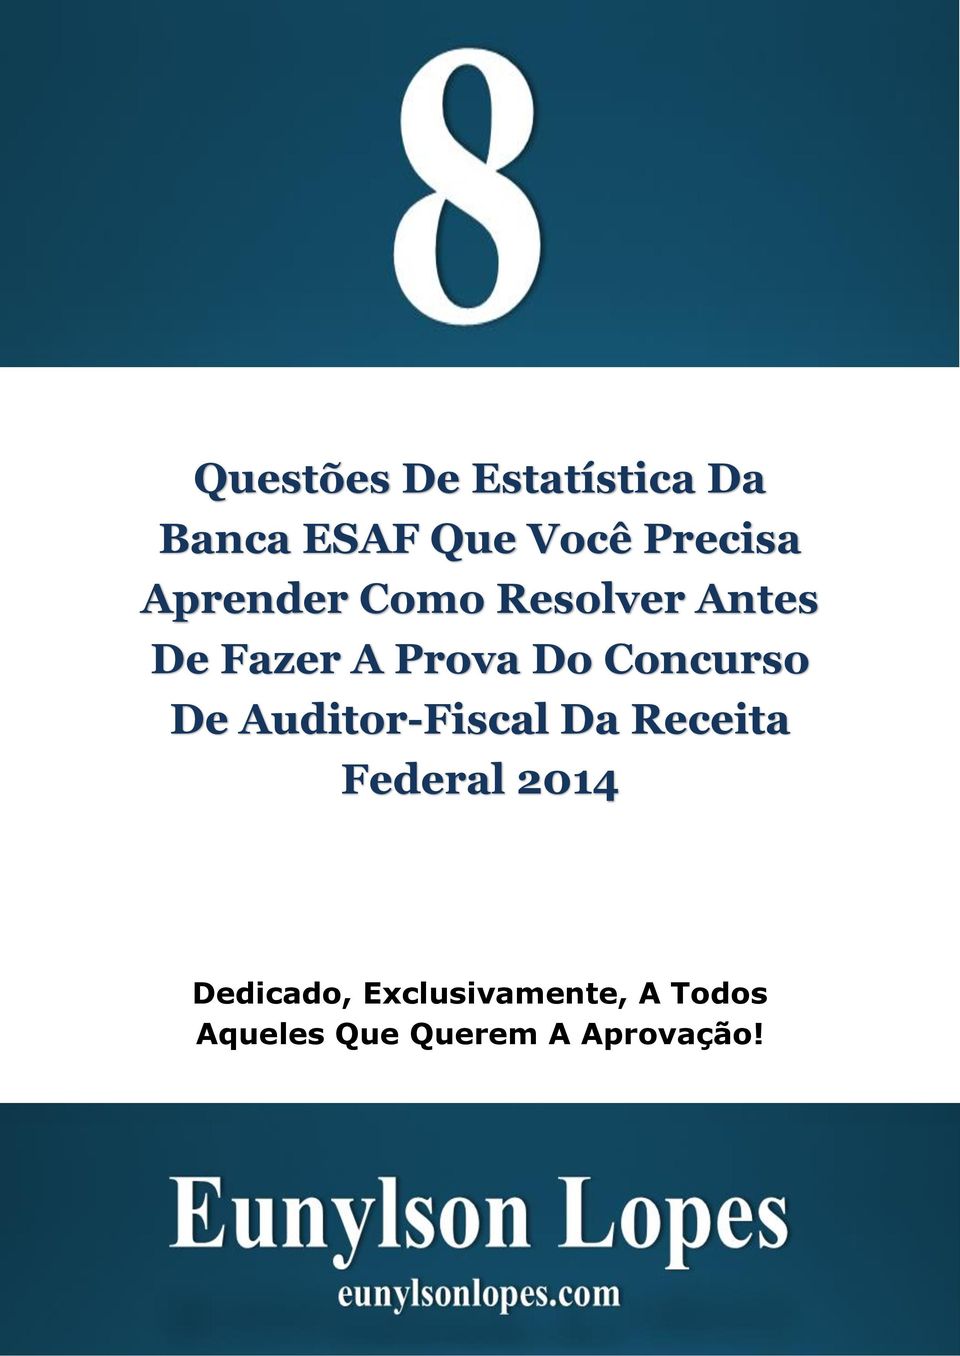 Do Concurso De Auditor-Fiscal Da Receita Federal 2014